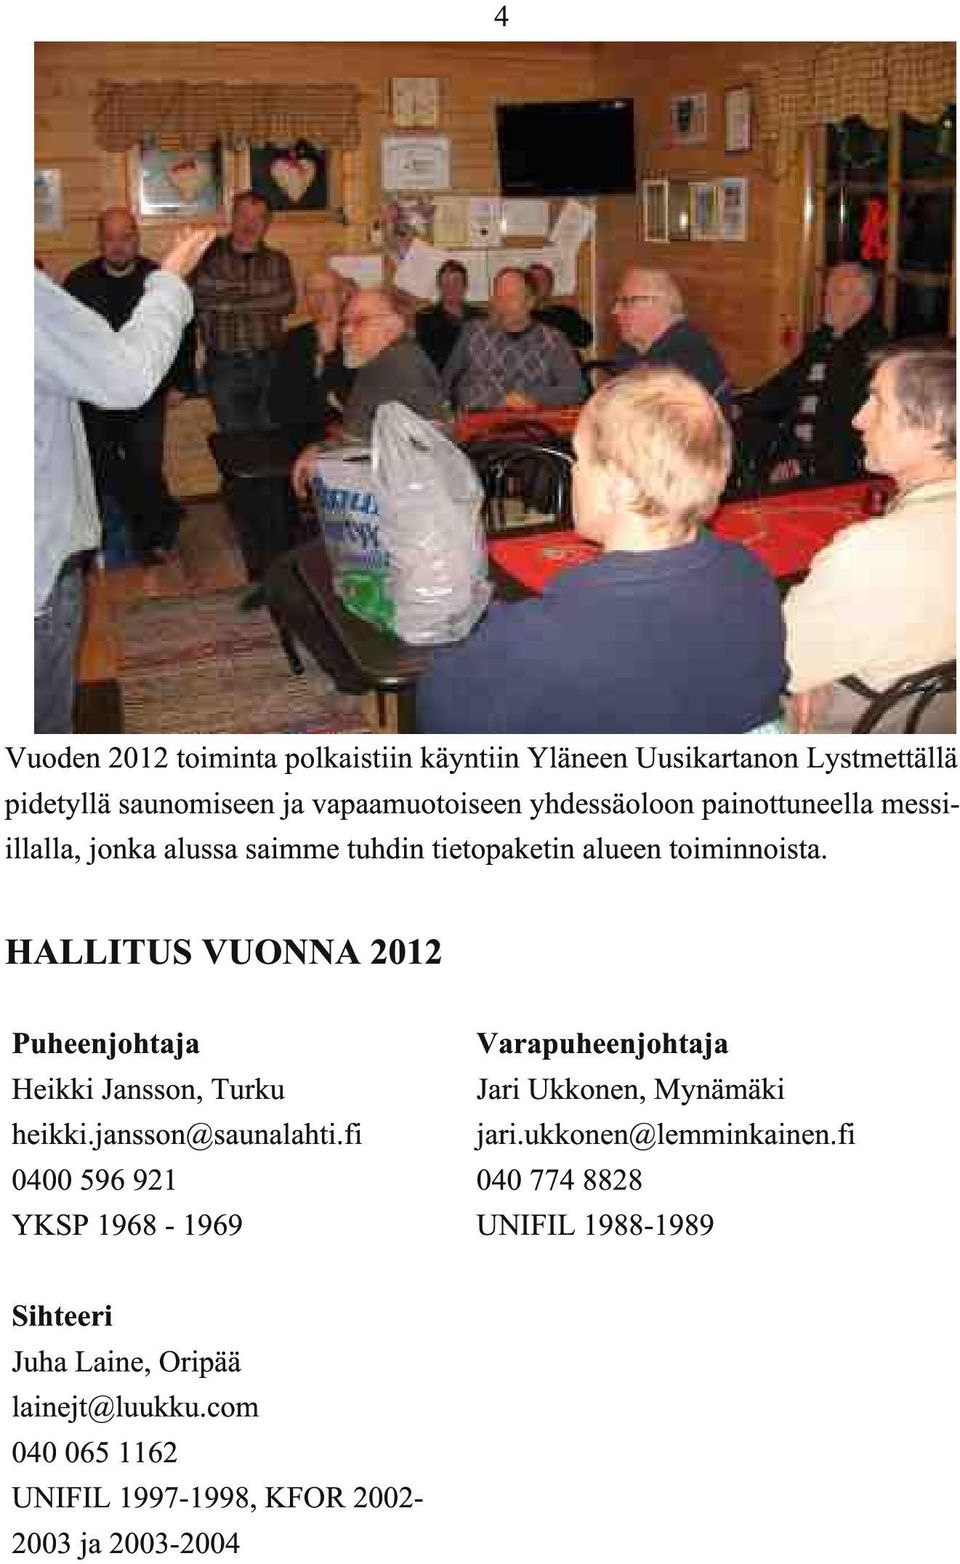 HALLITUS VUO A 2012 Puheenjohtaja Heikki Jansson, Turku heikki.jansson@saunalahti.